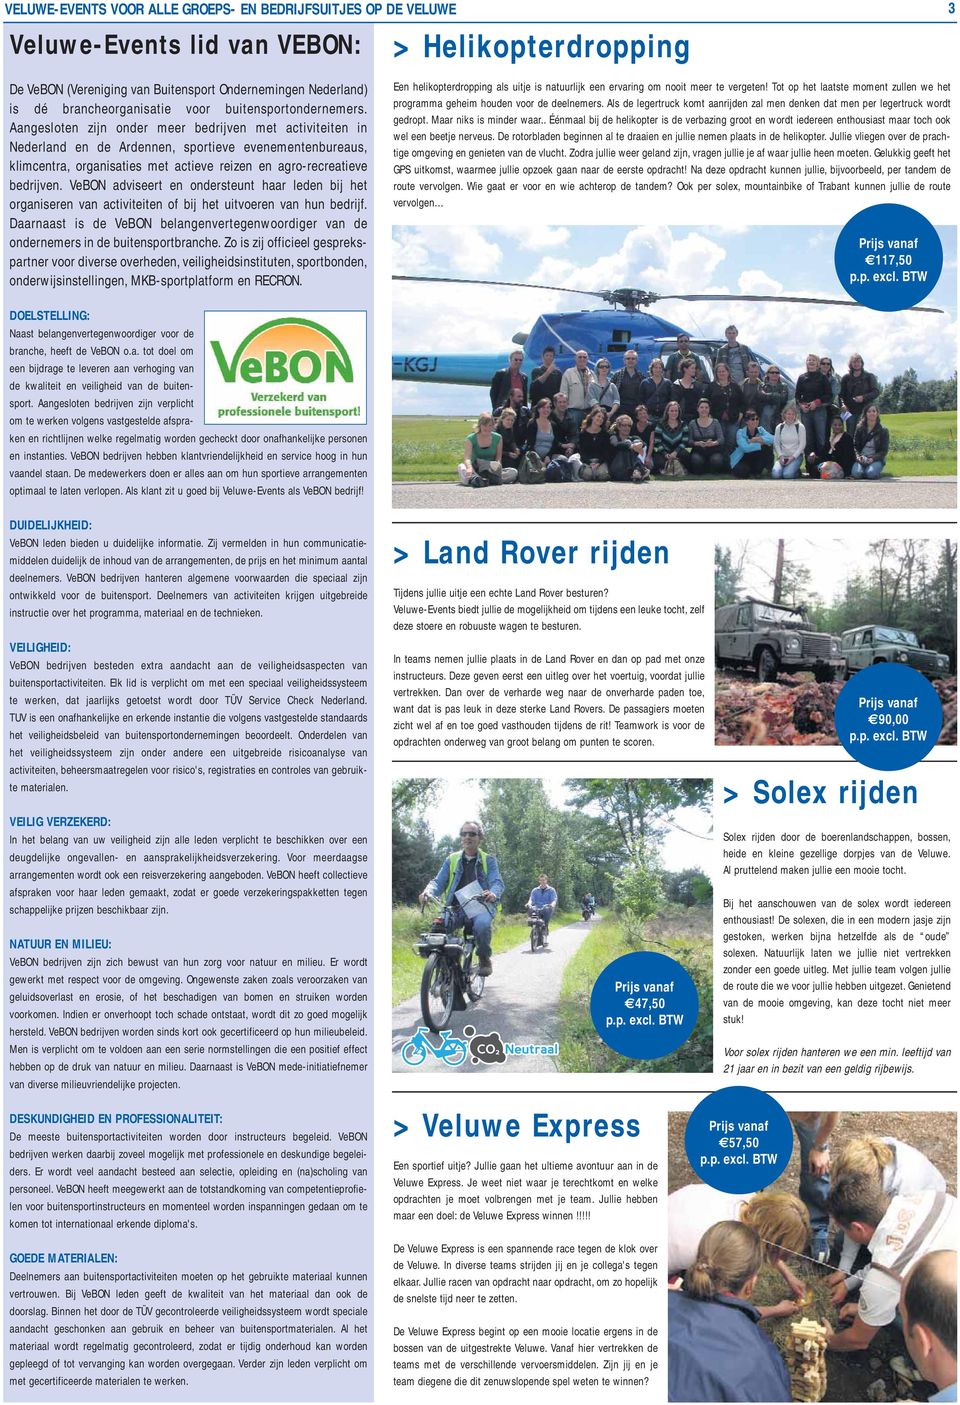 Aangesloten zijn onder meer bedrijven met activiteiten in Nederland en de Ardennen, sportieve evenementenbureaus, klimcentra, organisaties met actieve reizen en agro-recreatieve bedrijven.